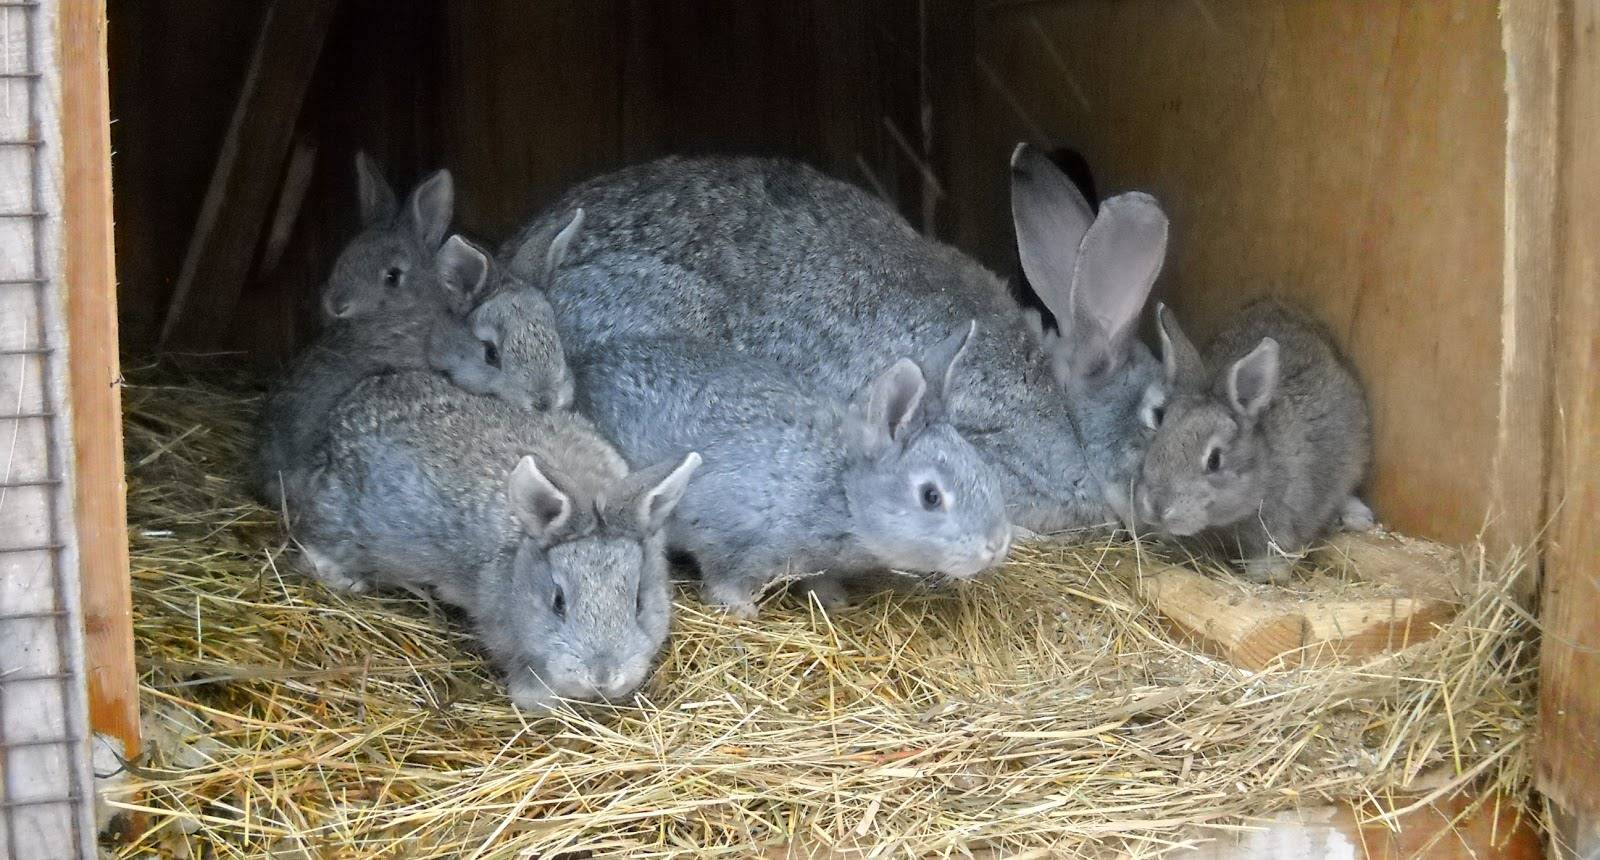 Кролик серый великан: описание породы и особенности разведения